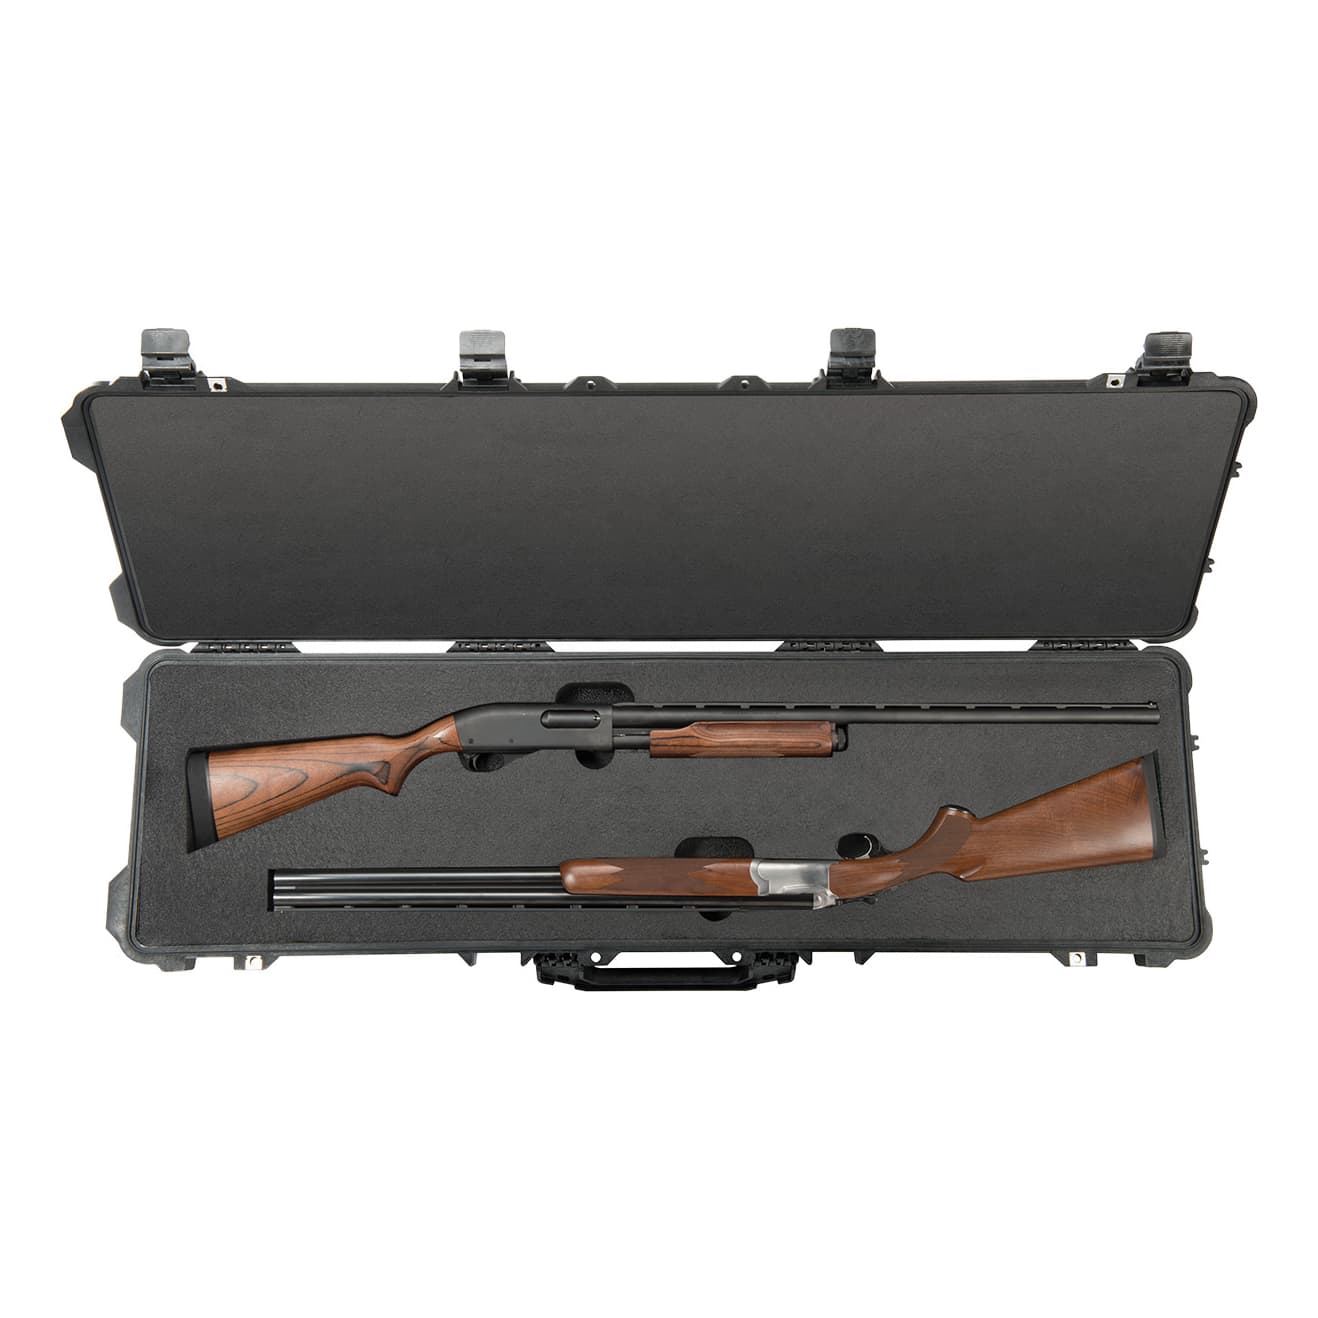 Pelican® 1750 Double Long Gun Case - In the Field